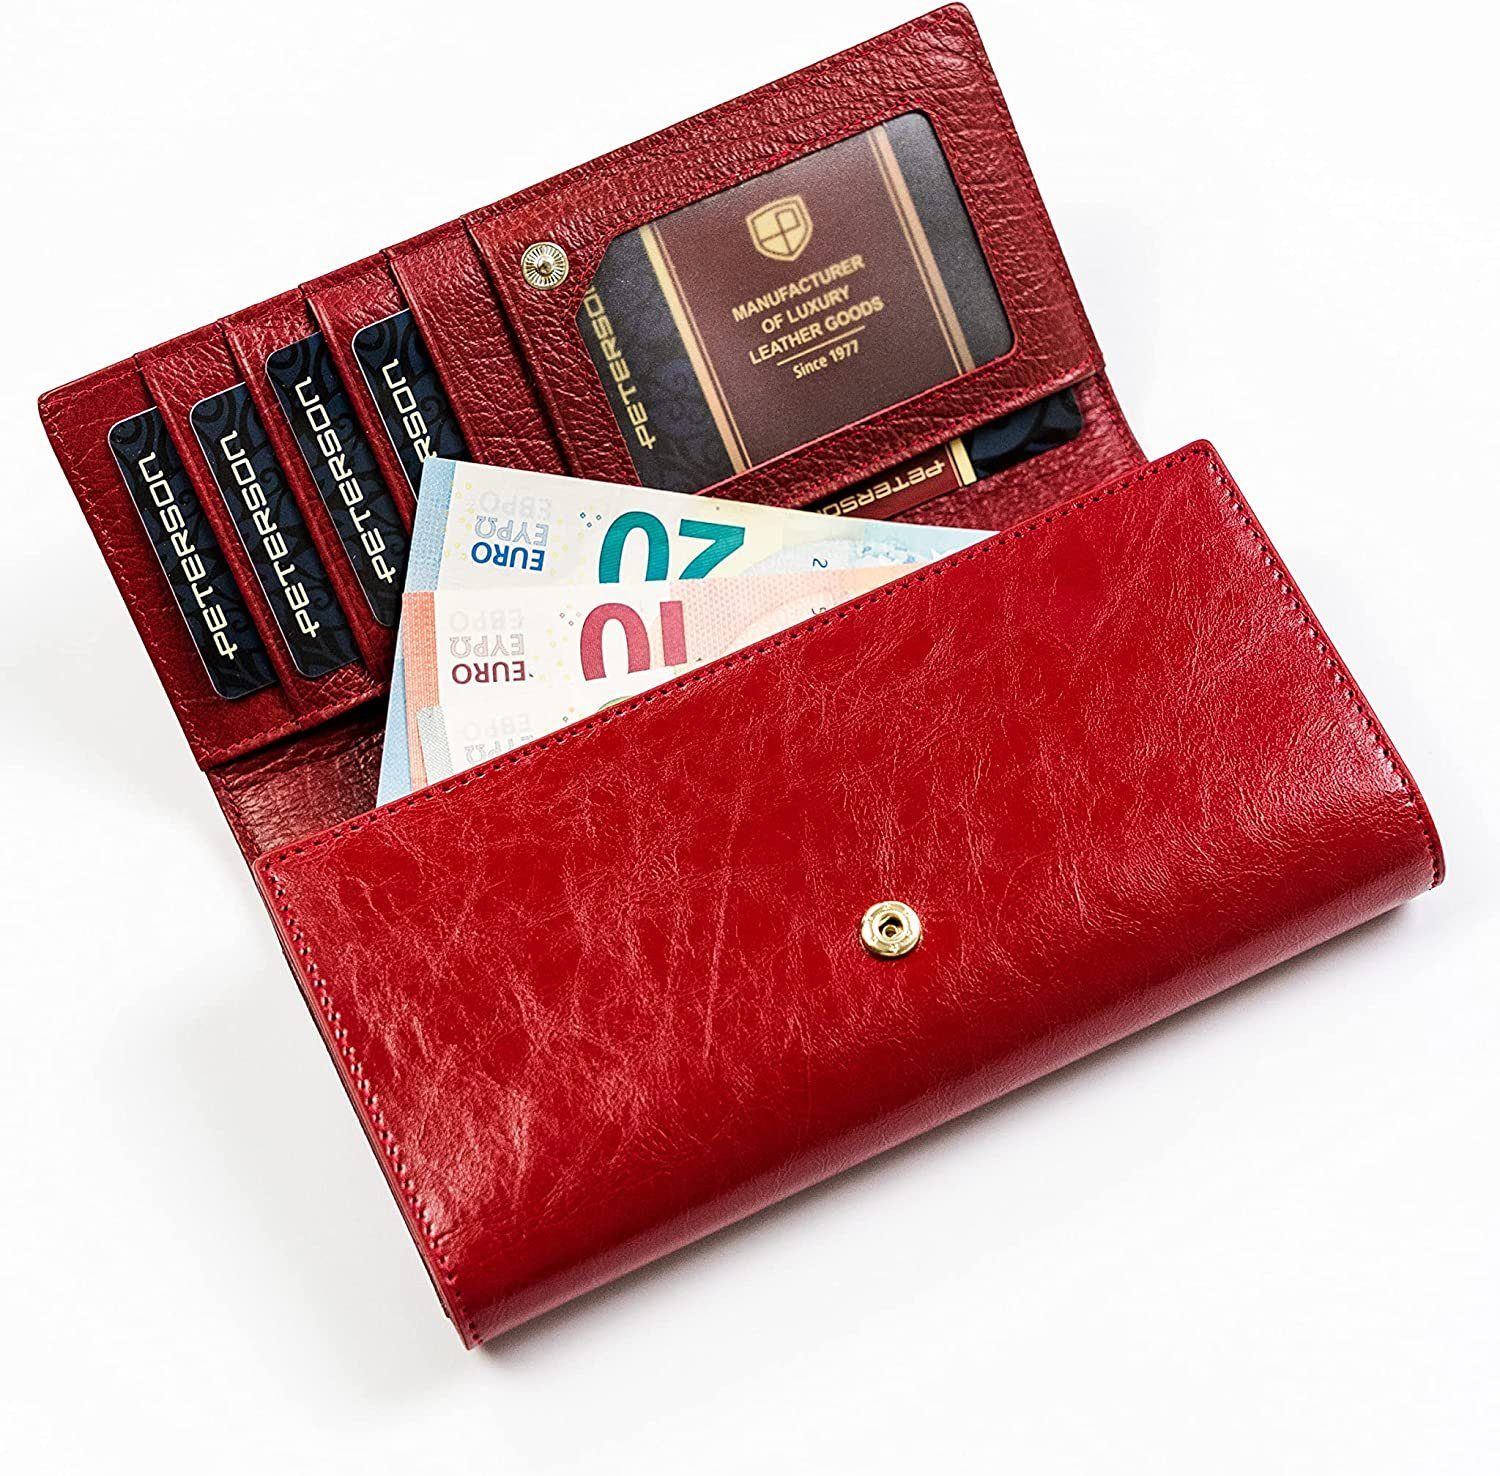 Elemente Technologie, Naturleder, Echtleder RFID Qualität, - Damenbrieftasche Fächer Goldverzierte Zahlreiche Hohe - rot Geldbörse PETERSONⓇ